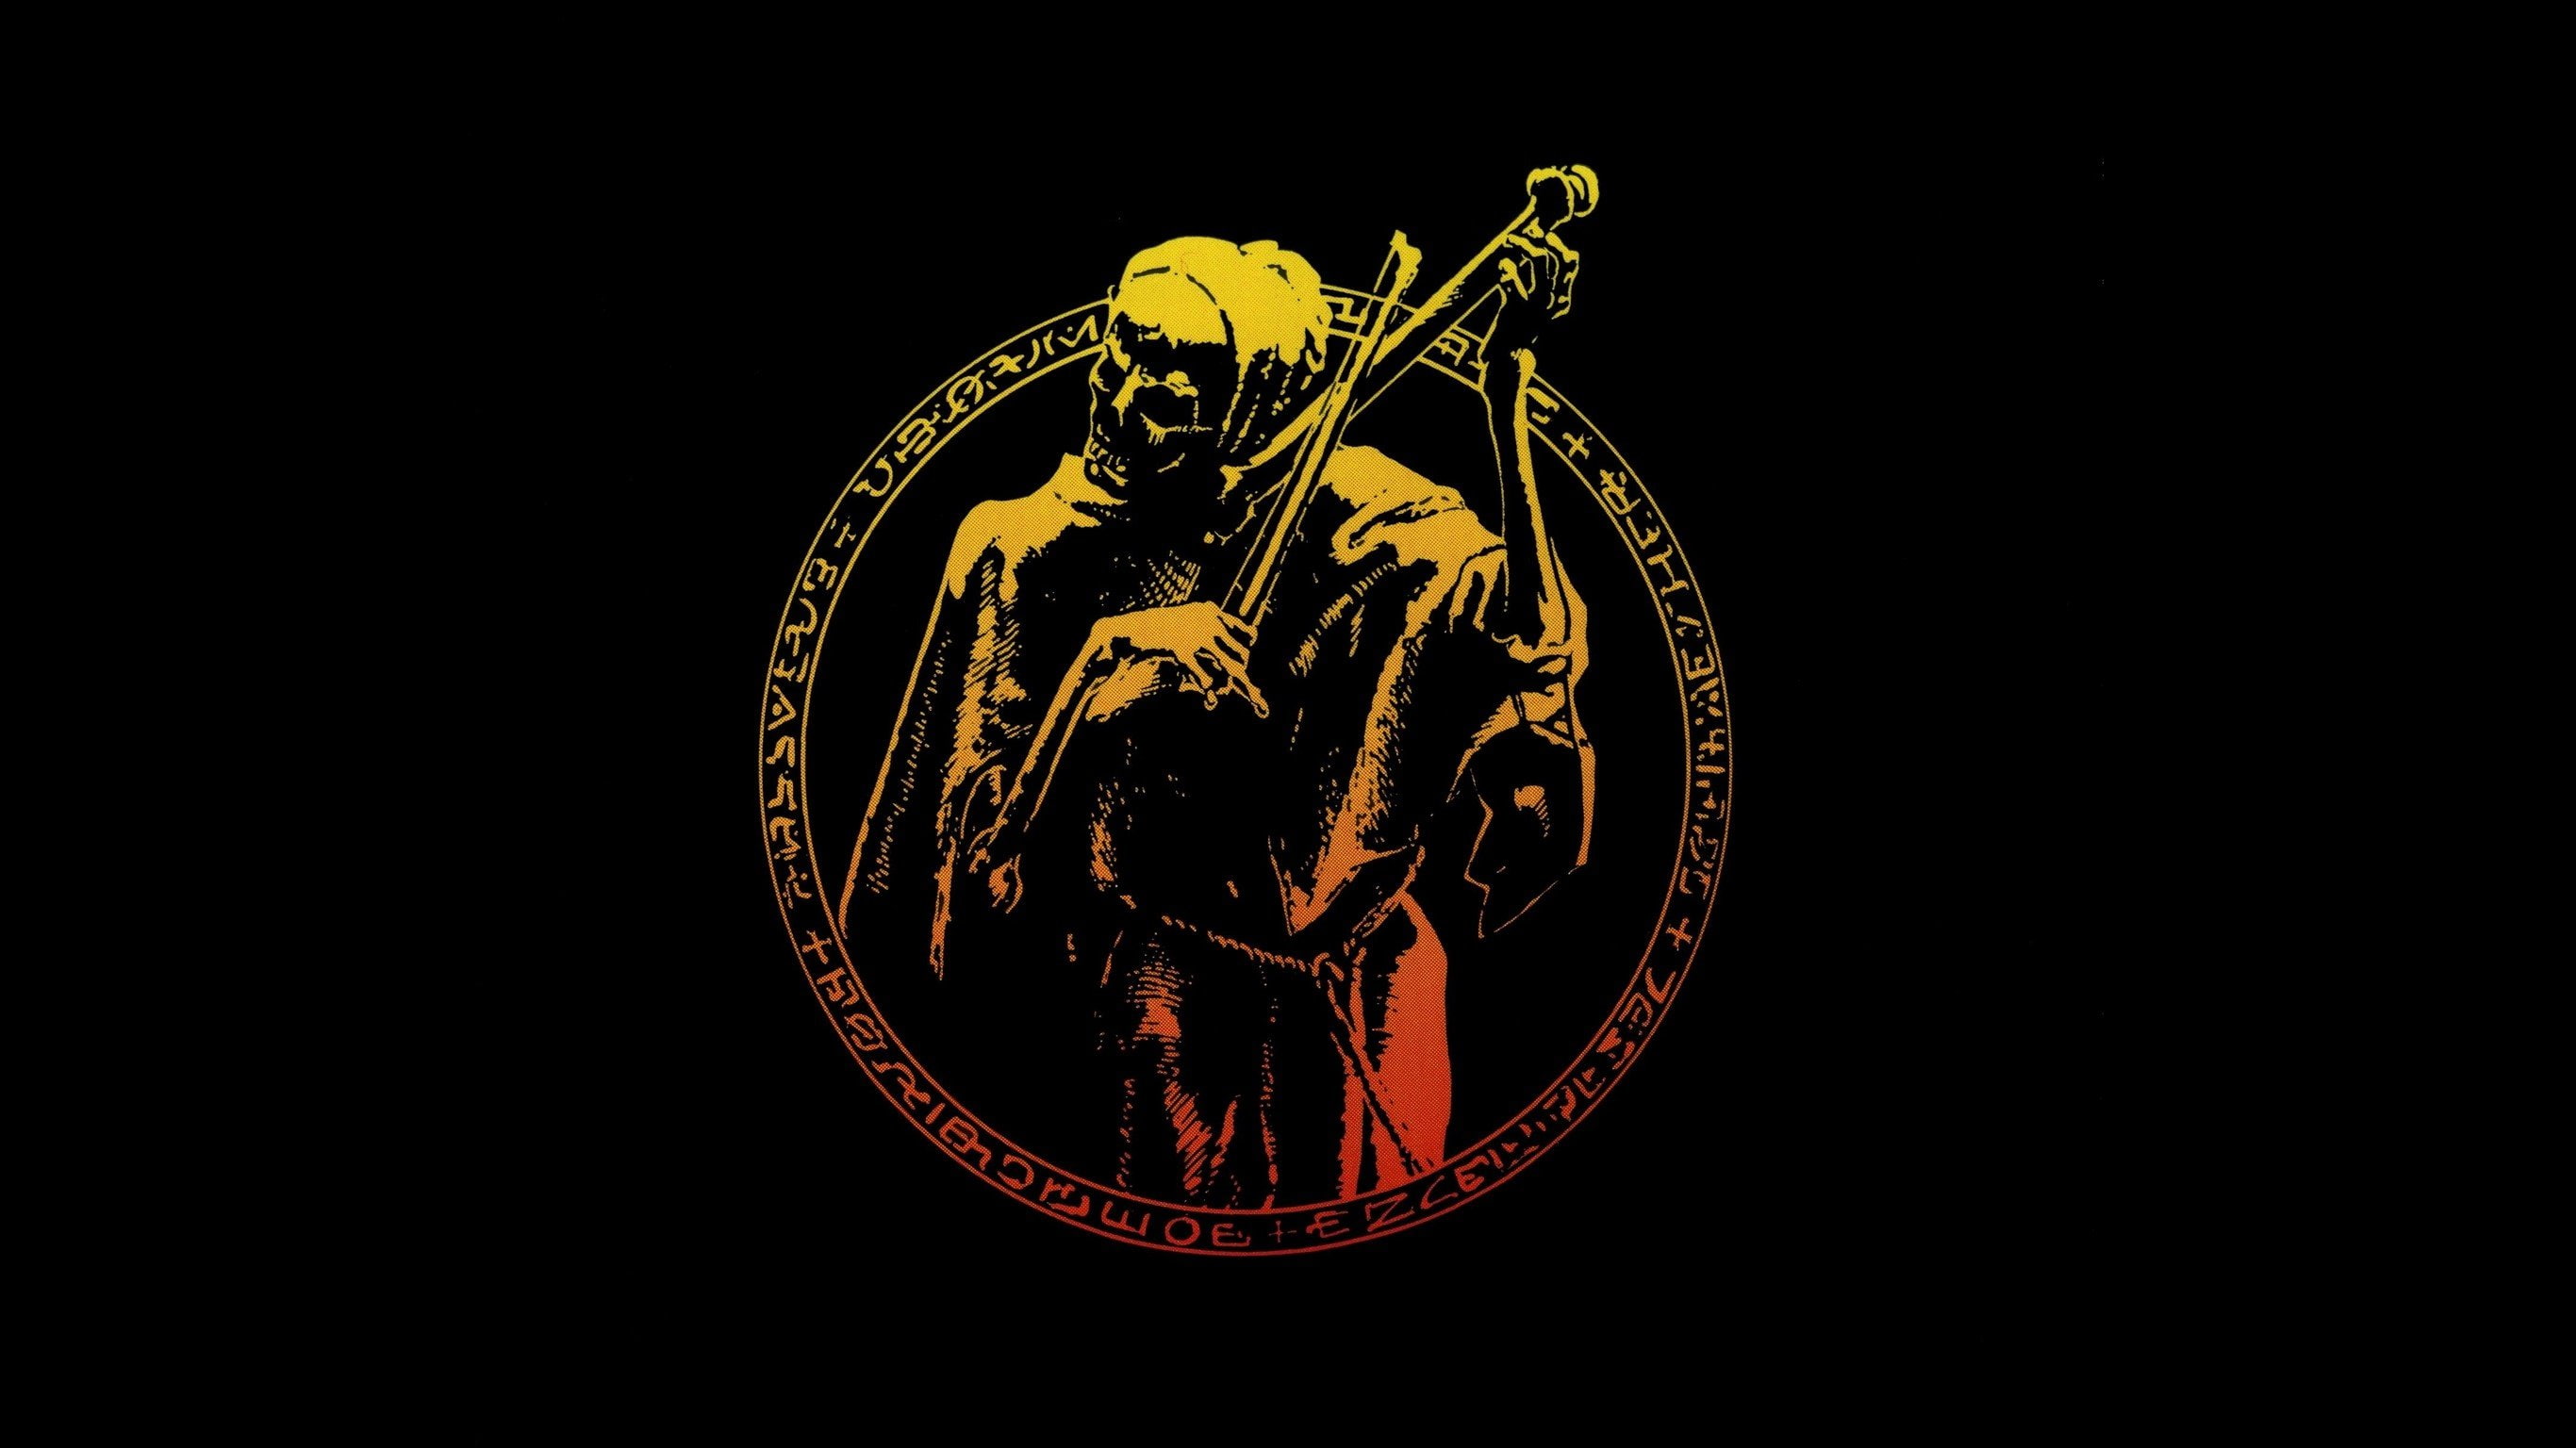 coroner punishment for decadence skeleton skull thrash metal album covers cover art